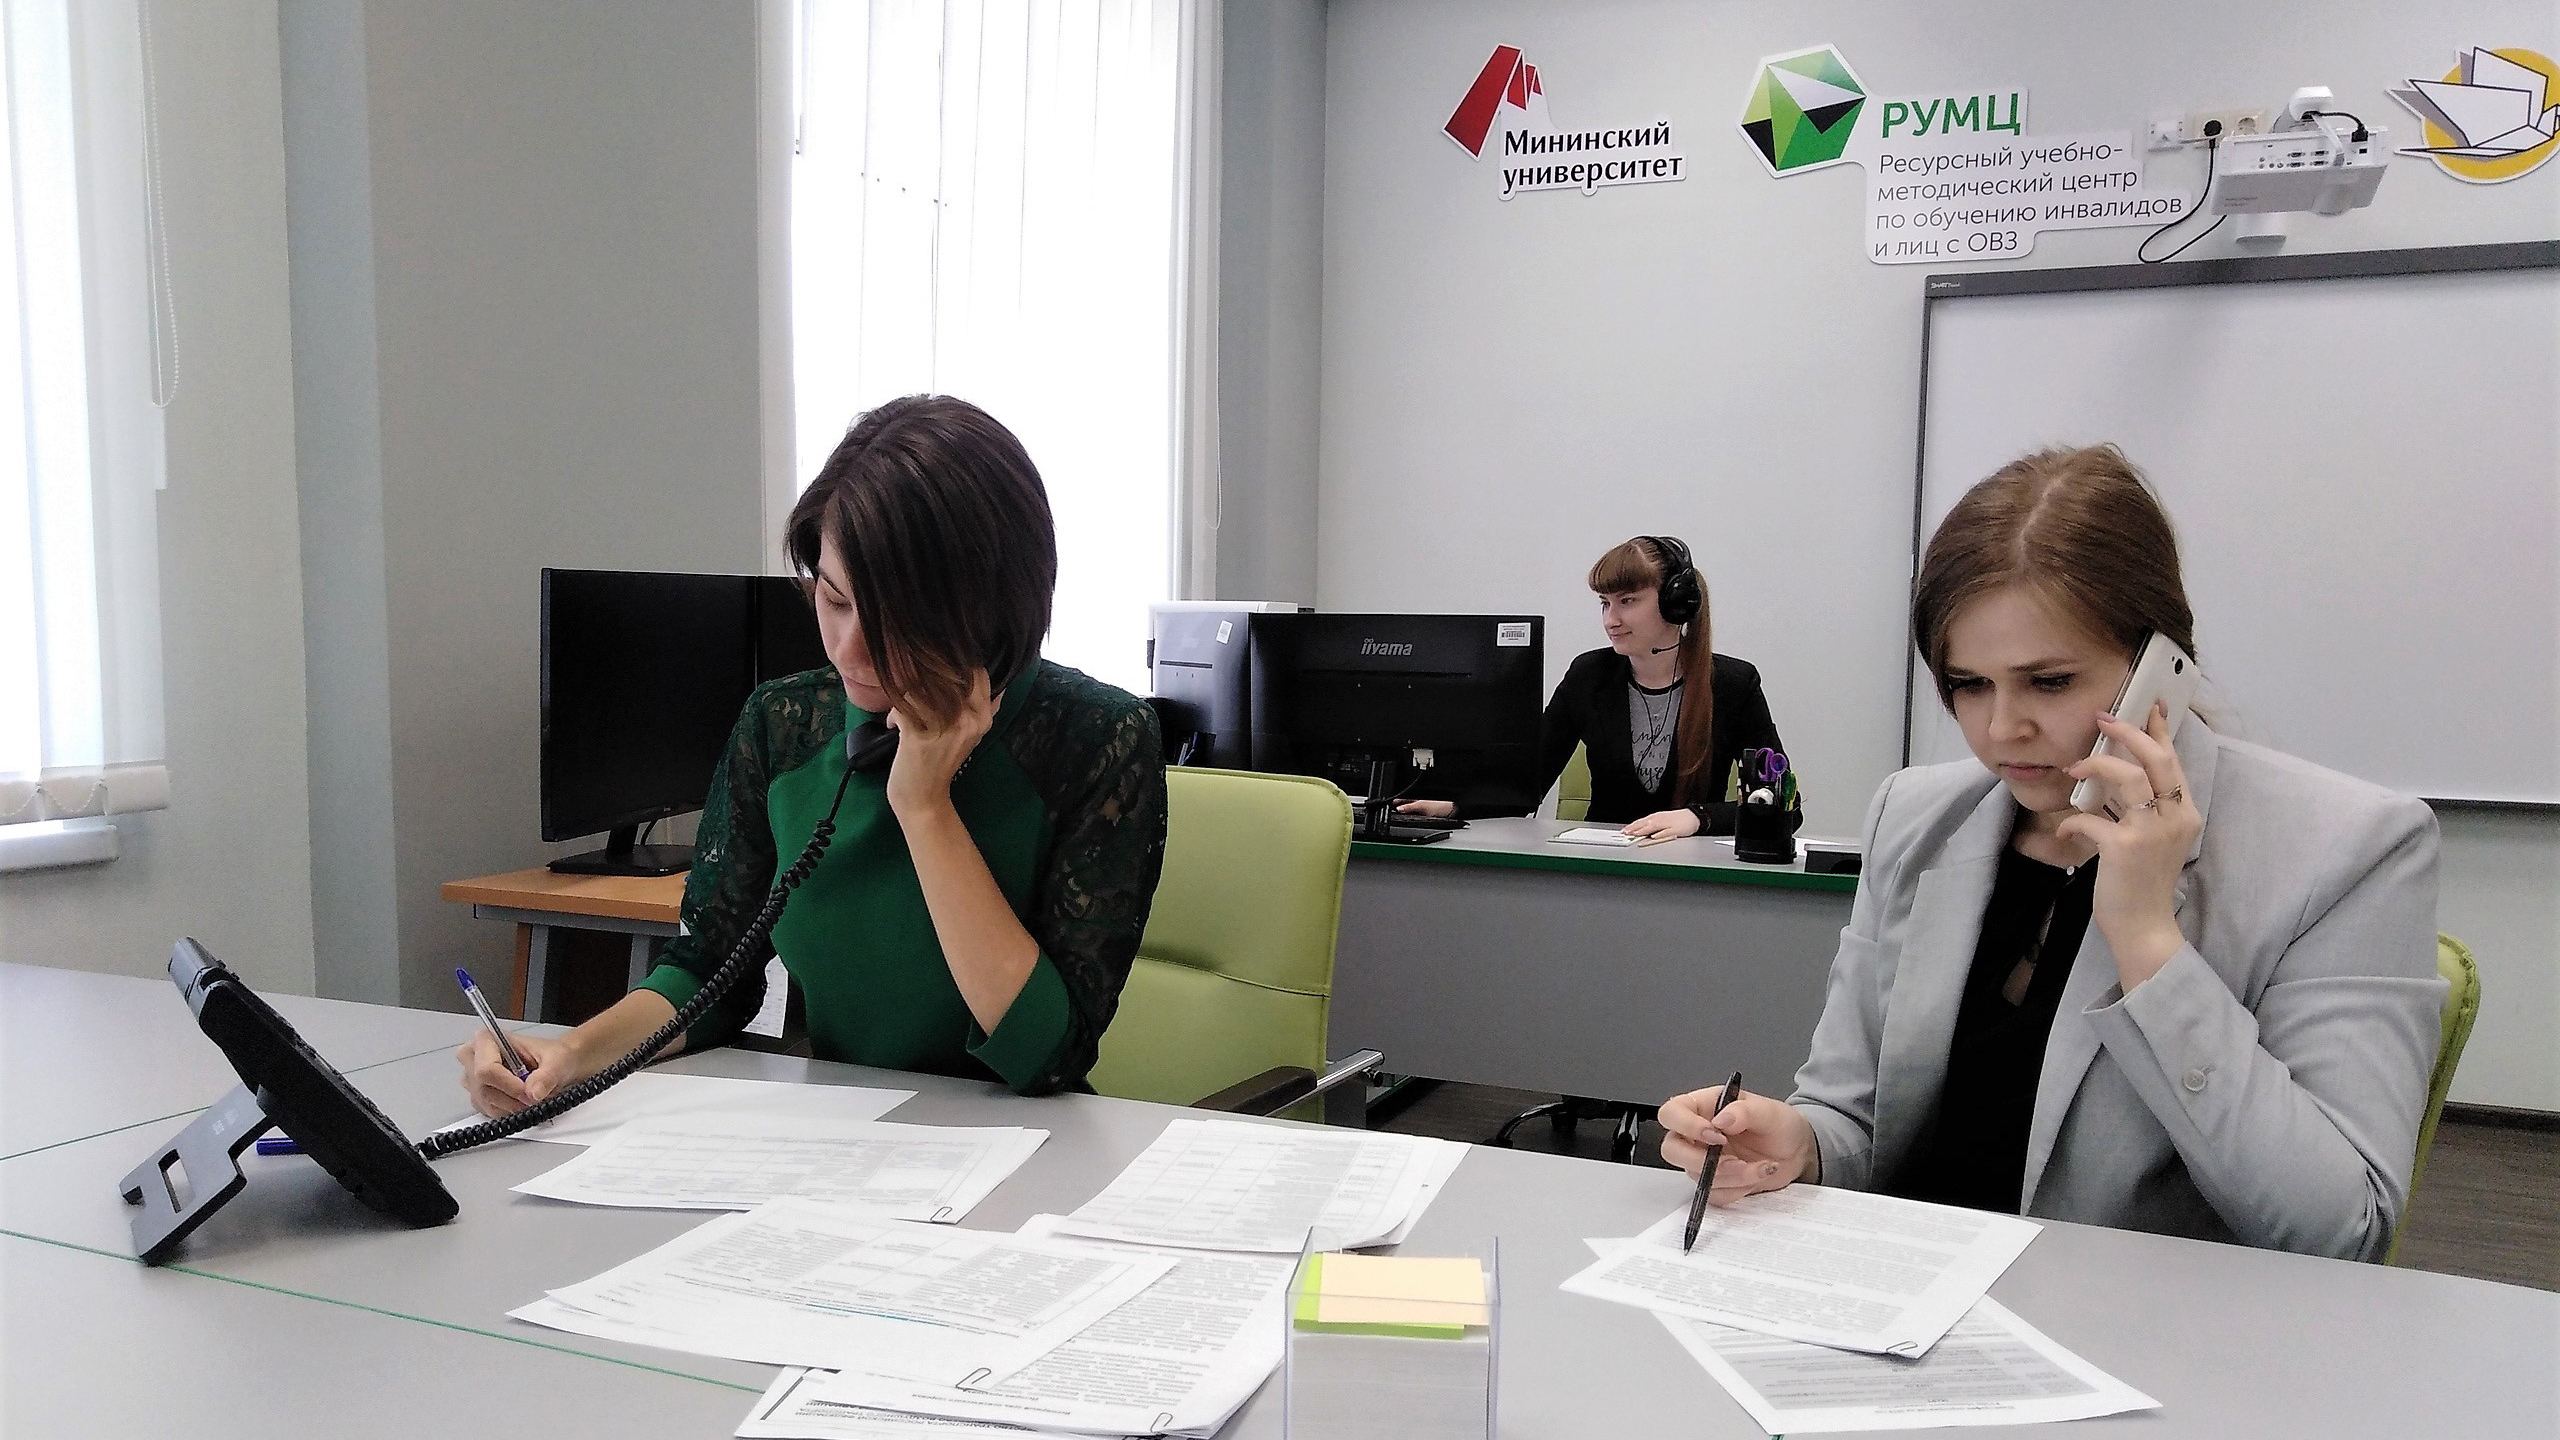 Call-центр Мининского университета продолжает оказывать консультационную поддержку по вопросам инклюзивного высшего образования